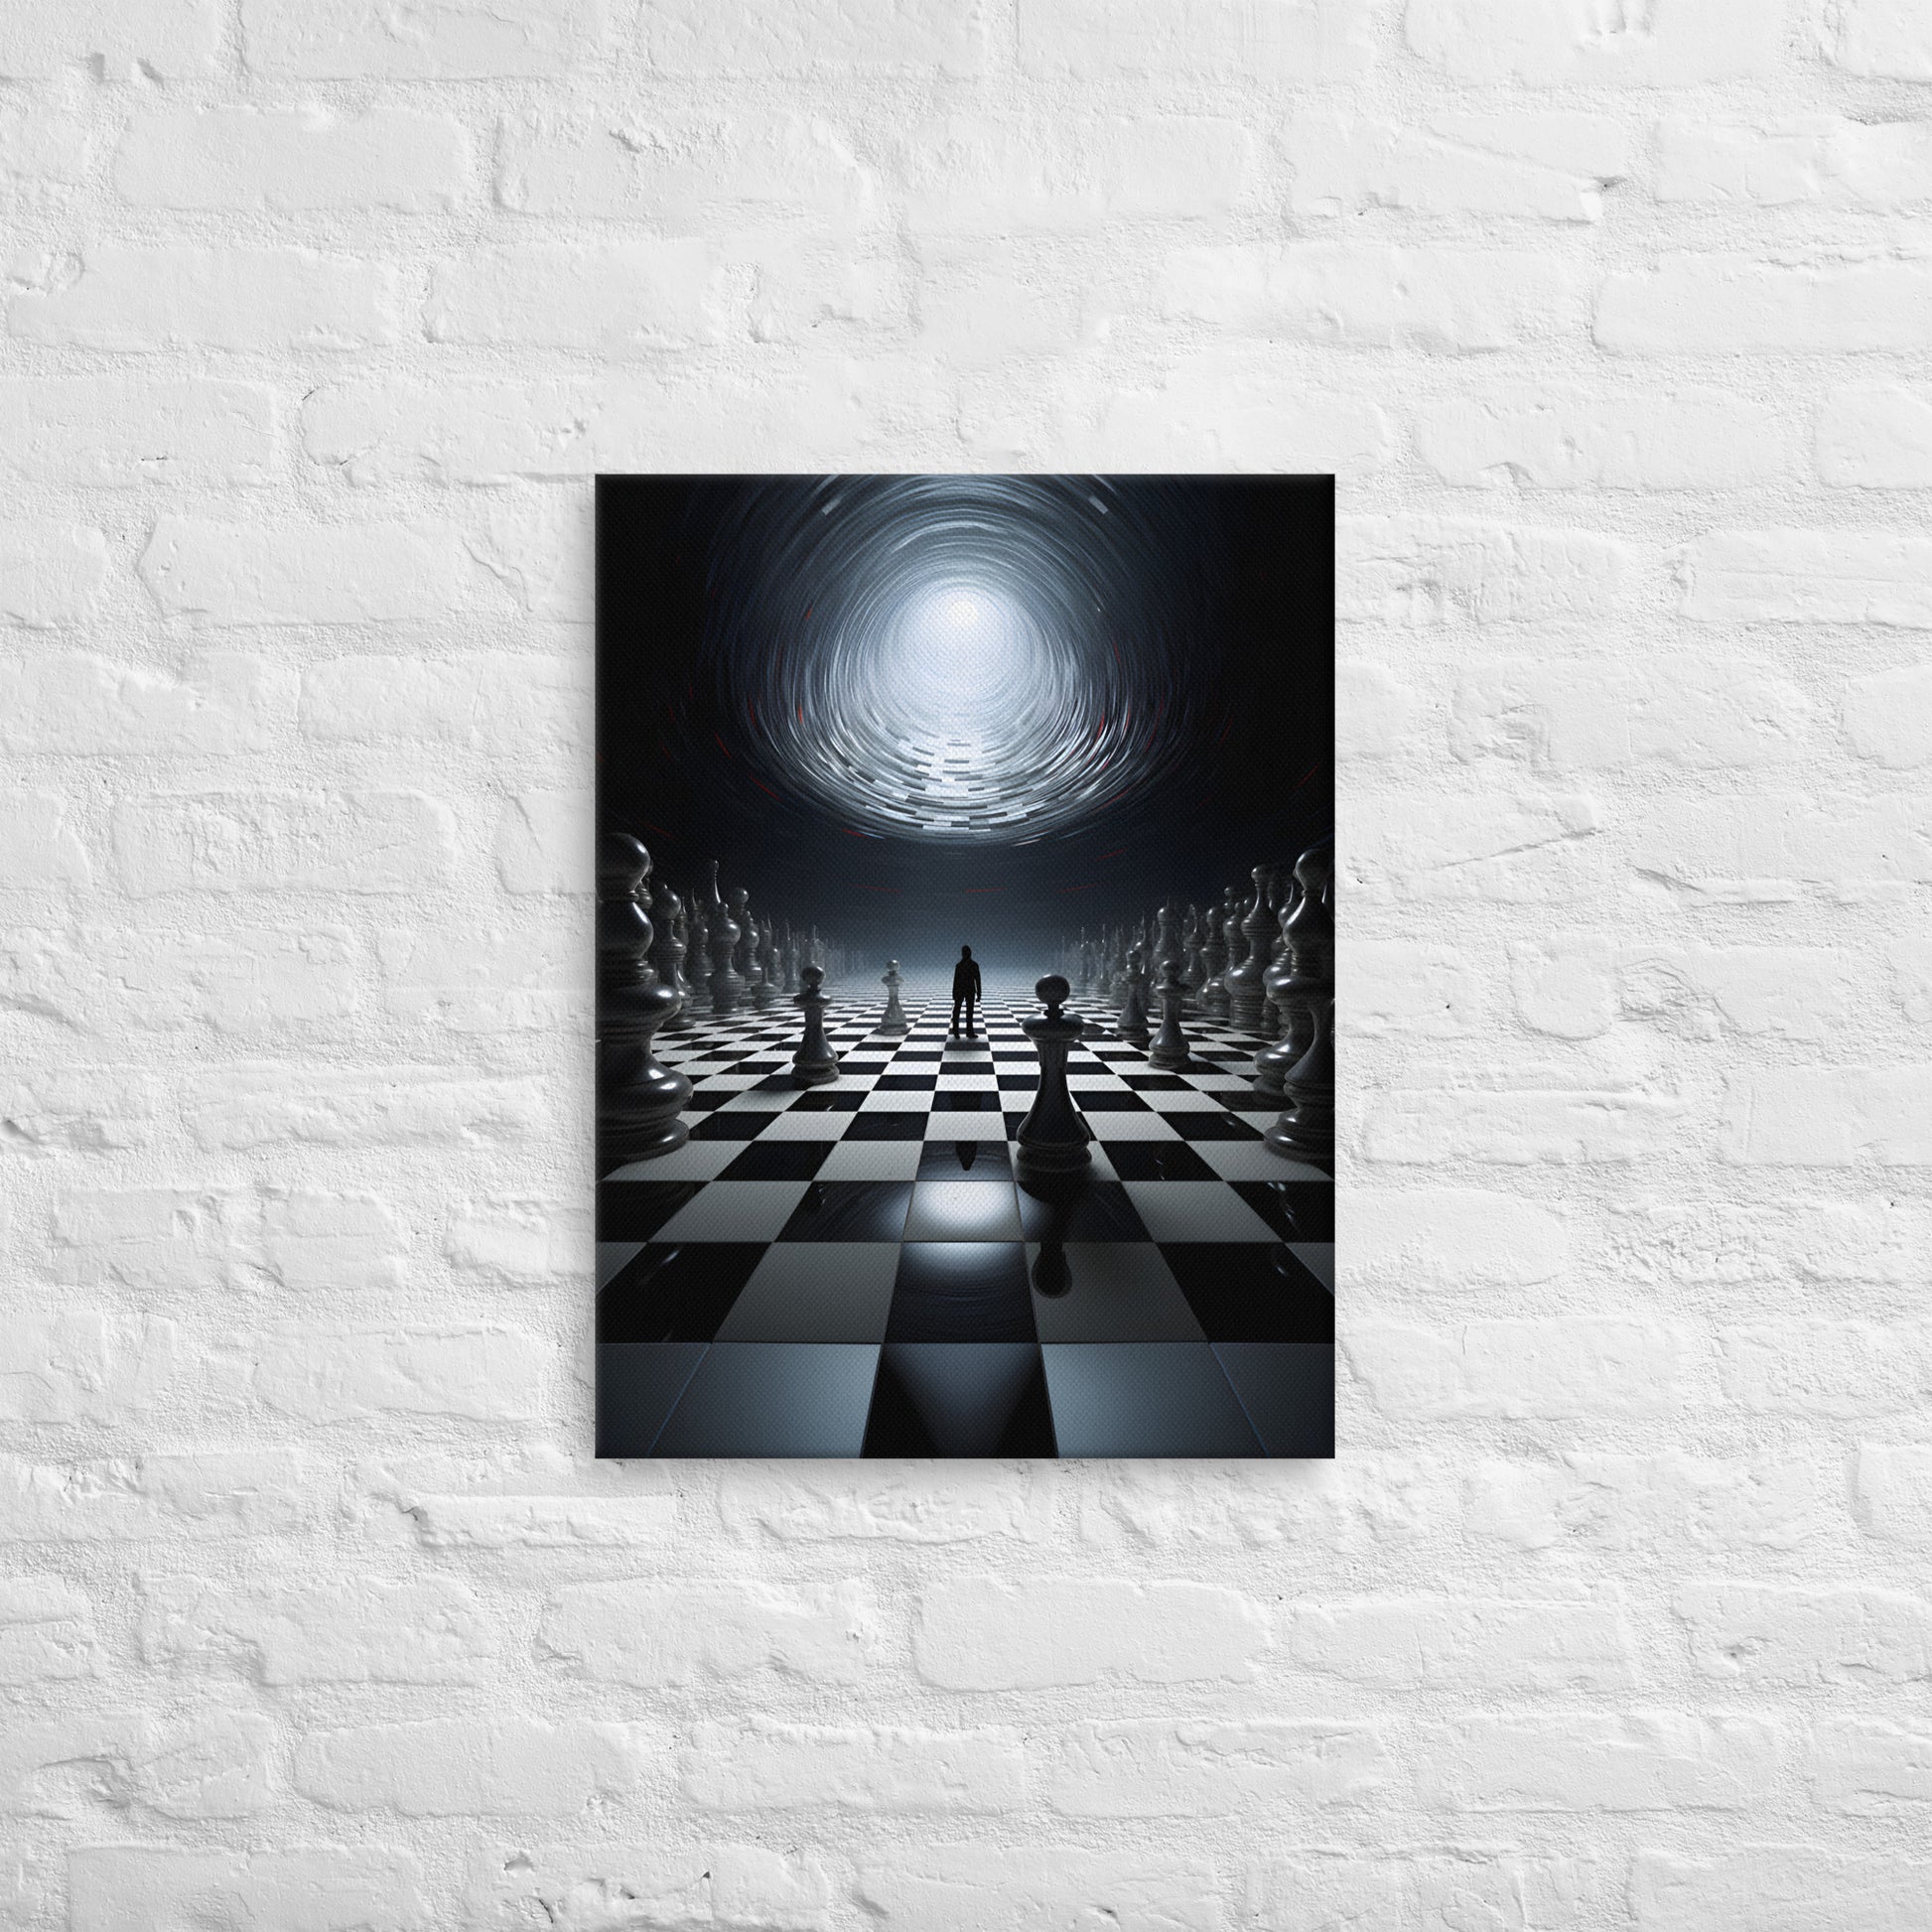 Inter-Dimensional Chess; AI Wall Art, 18x24 inch Digital Canvas Print 